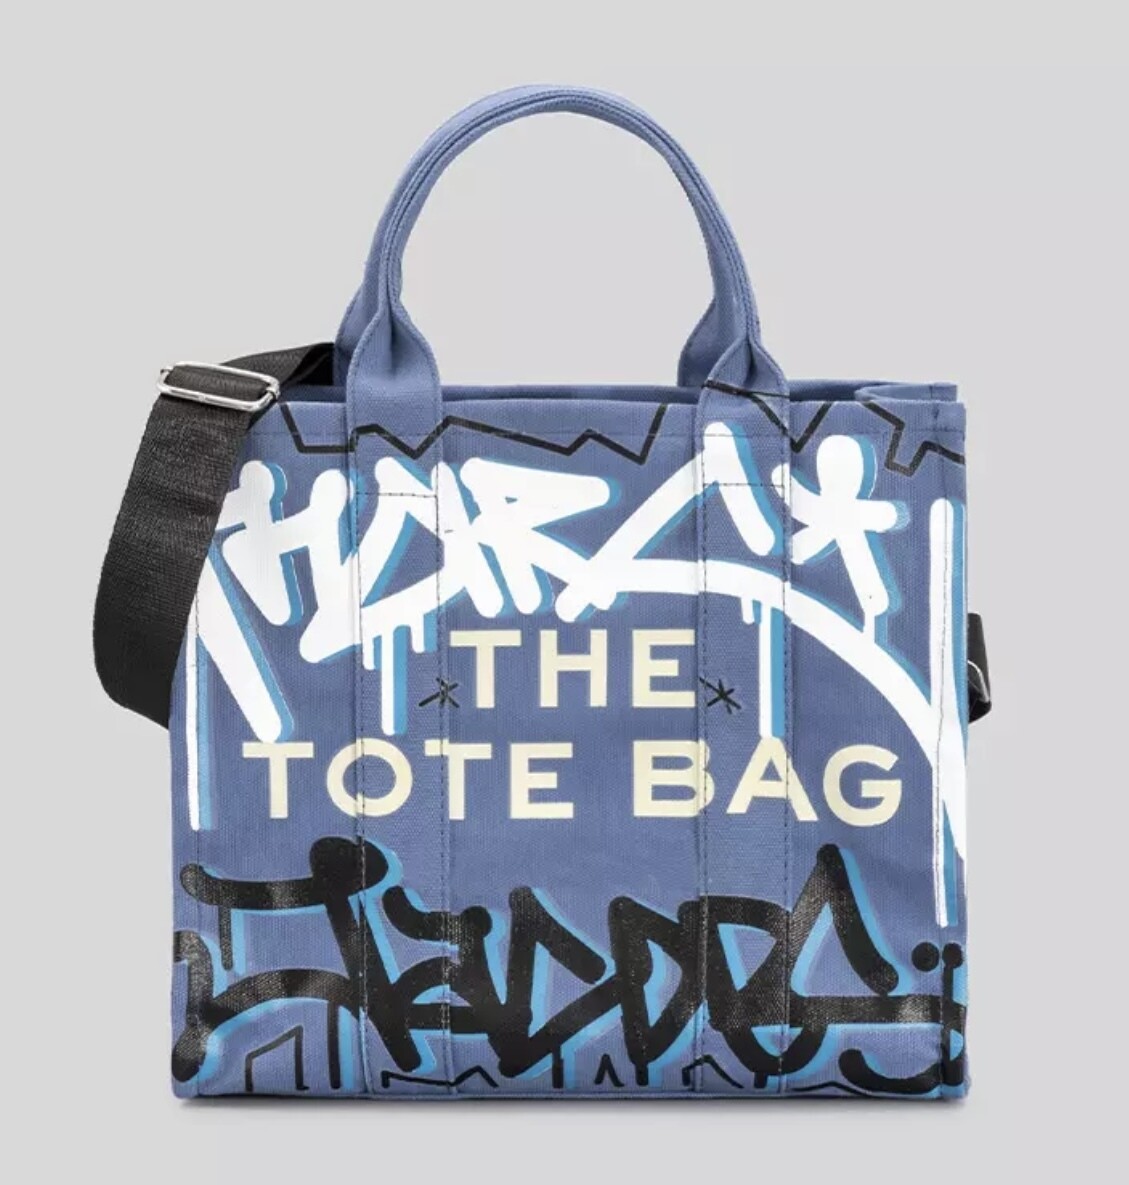 Graffiti Tote Bag